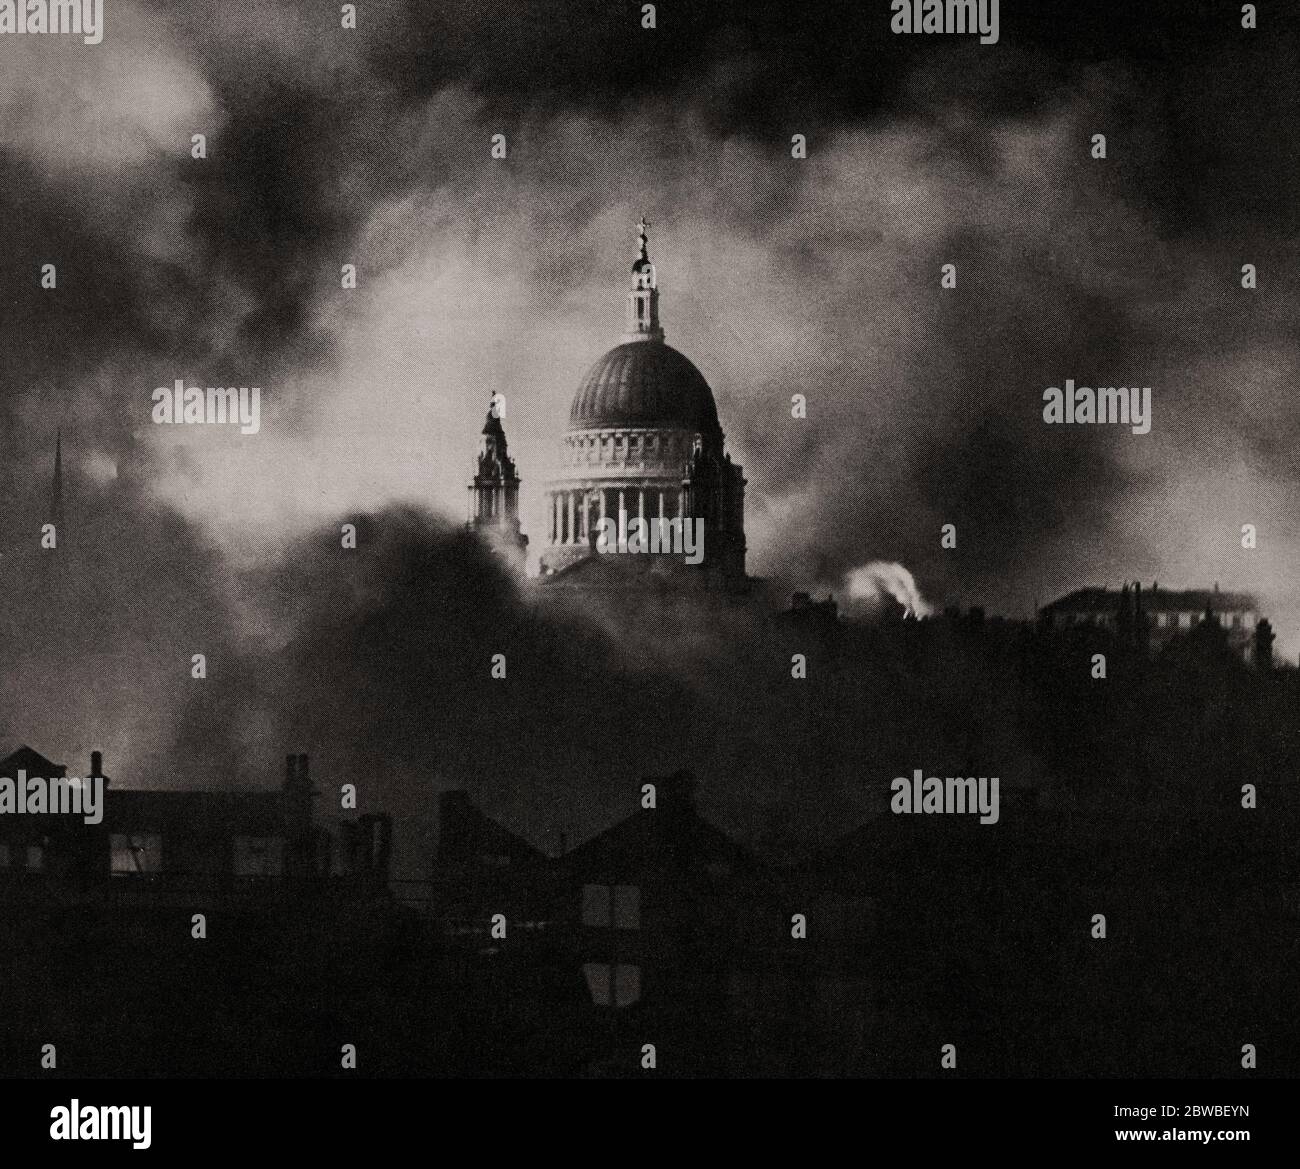 Durante la campaña de bombardeo de Blitz German contra el Reino Unido en 1940 y 1941, durante la Segunda Guerra Mundial, la cúpula de la Catedral de San Pablo se ve a través del humo de un ataque aéreo, de alguna manera, se libró de las bombas de la Luftwaffe. Foto de stock